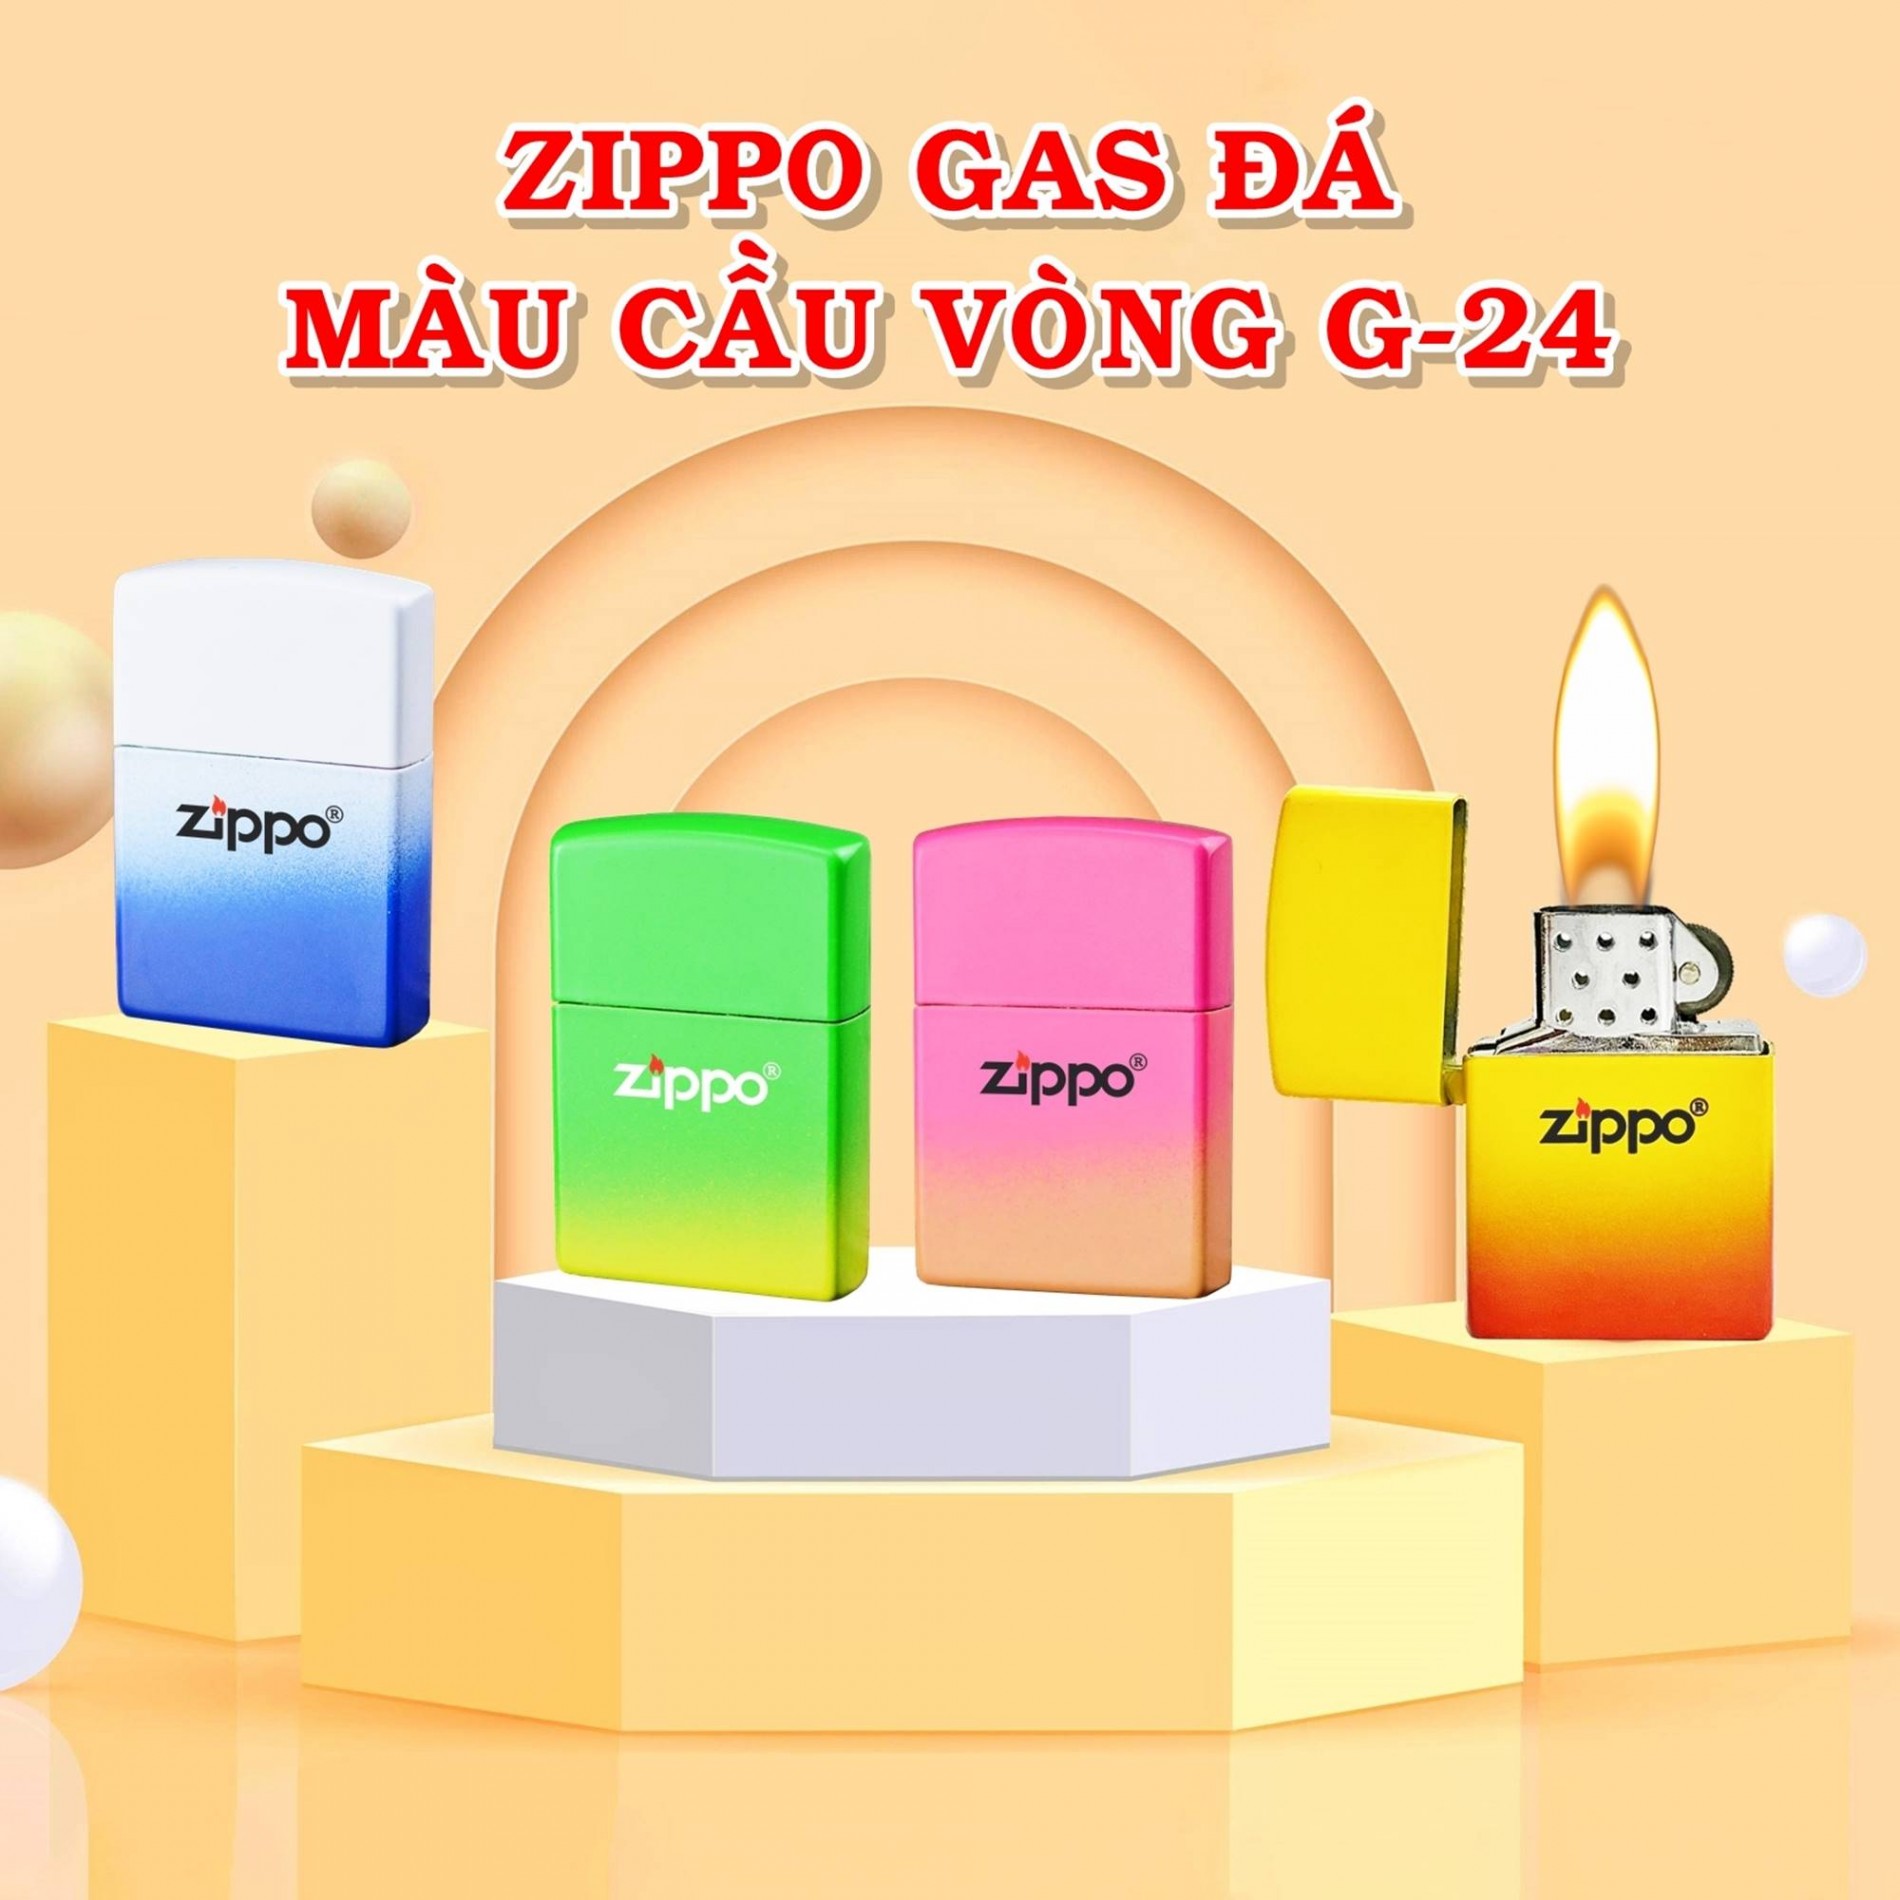 zippo_gas_da_mau_cau_vong